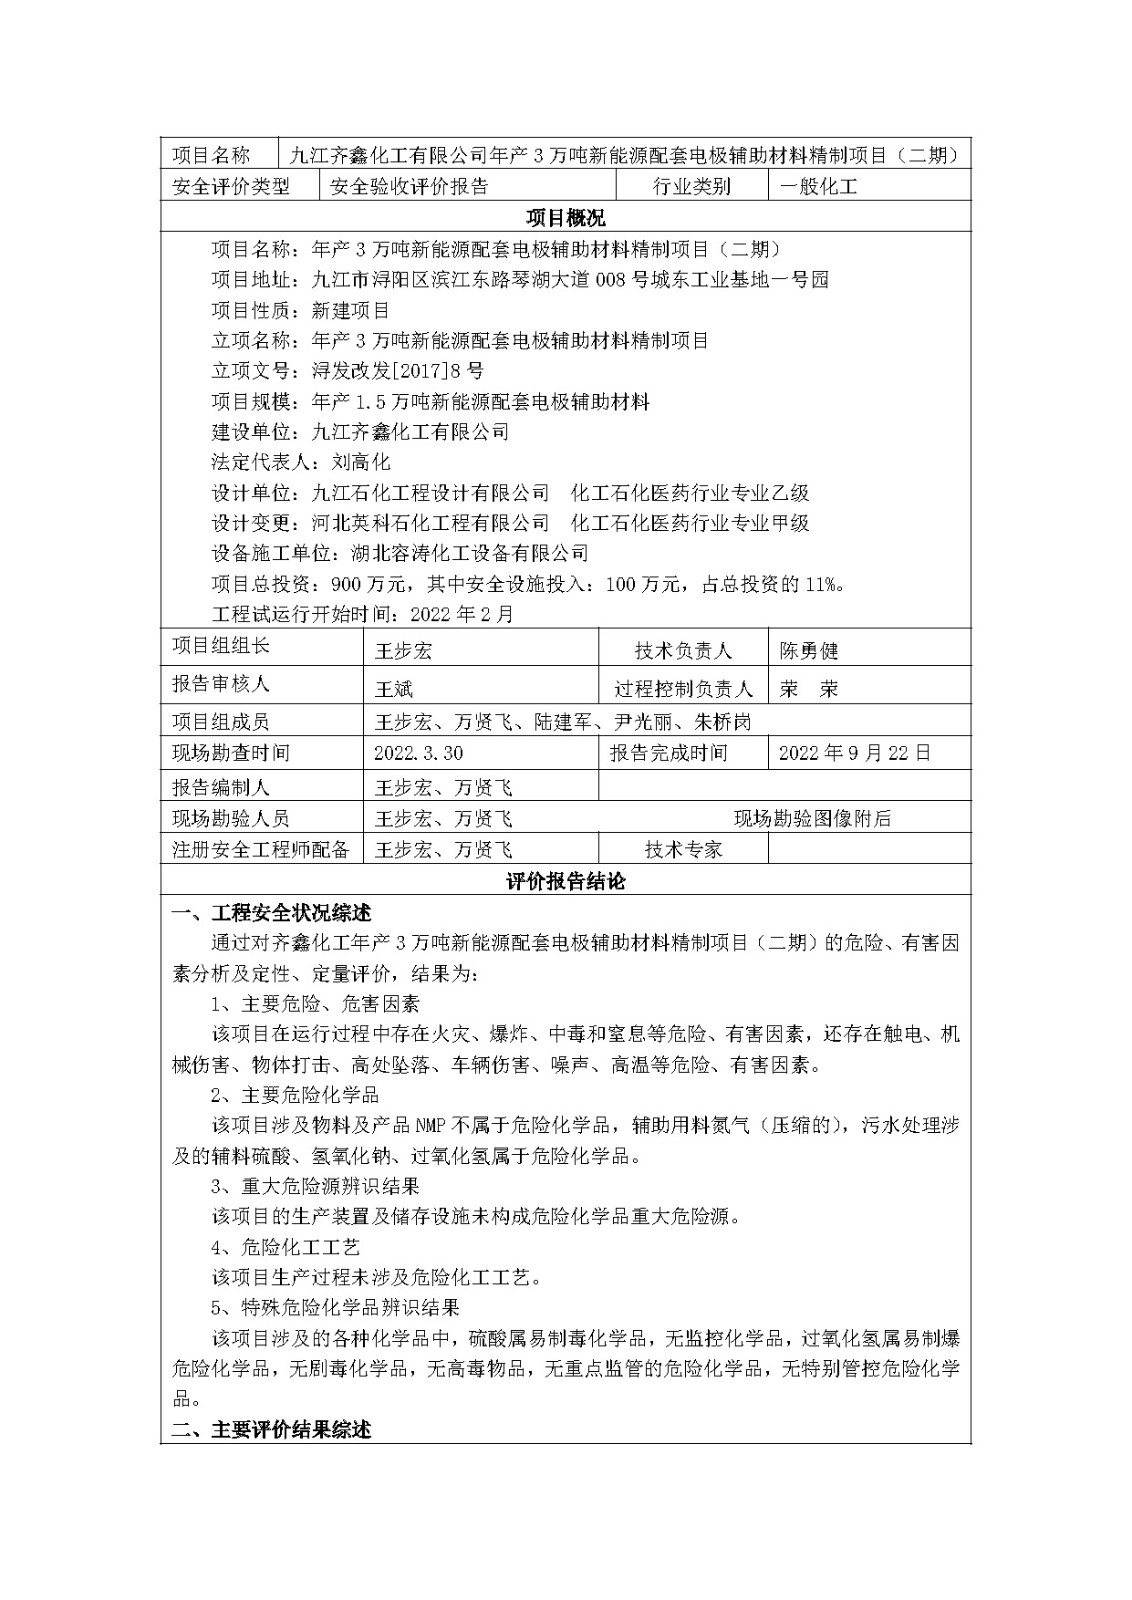 安全评价报告基本信息公开表(九江齐鑫化工有限公司)